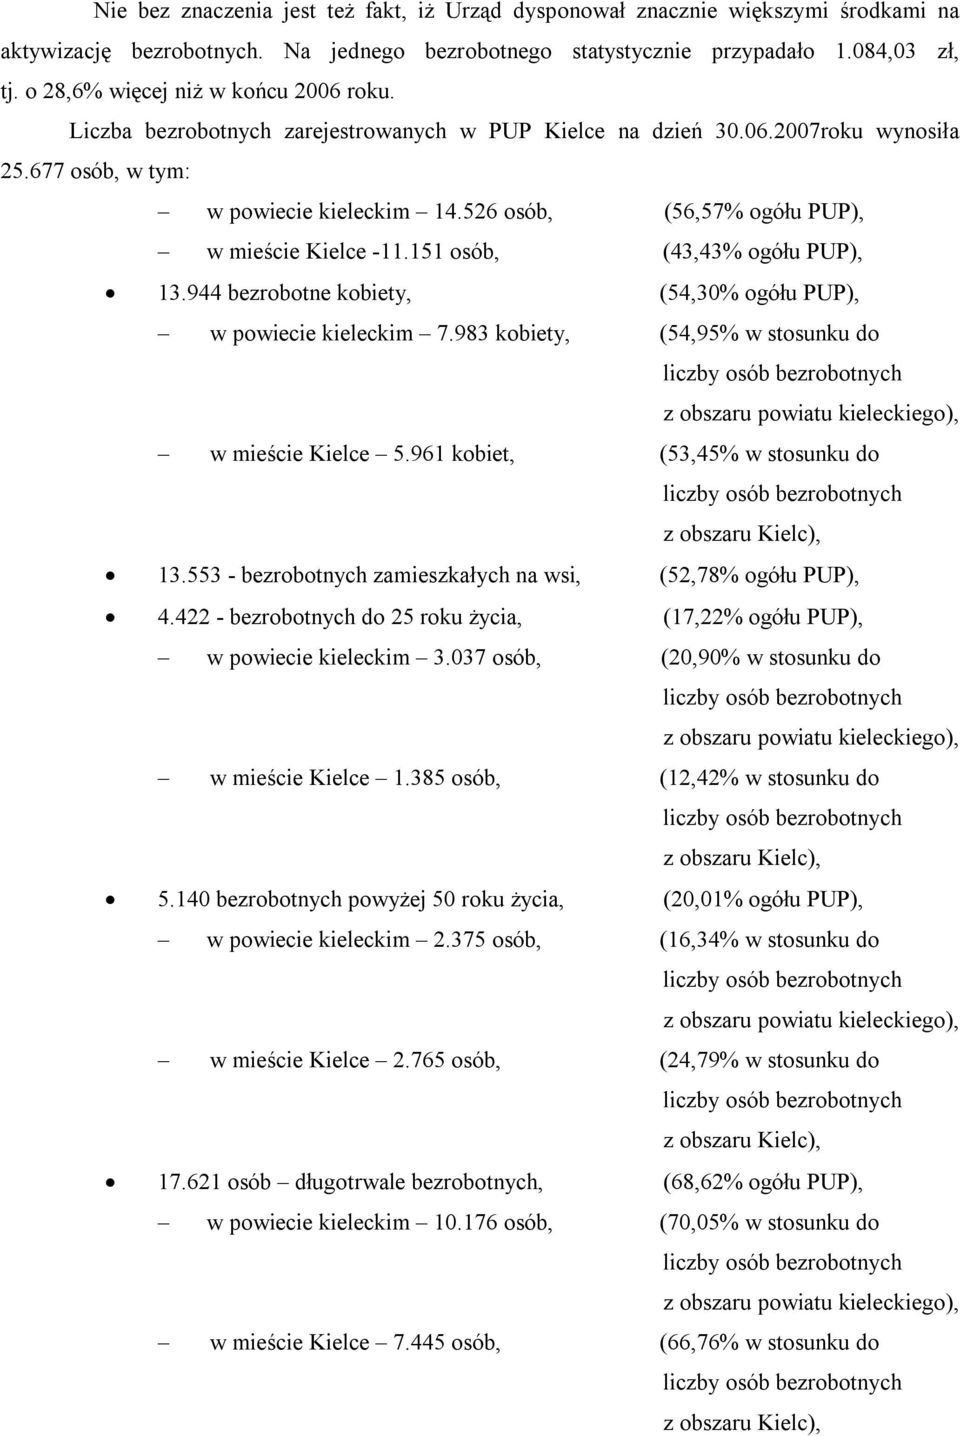 526 osób, (56,57% ogółu PUP), w mieście Kielce 11.151 osób, (43,43% ogółu PUP), 13.944 bezrobotne kobiety, (54,30% ogółu PUP), w powiecie kieleckim 7.